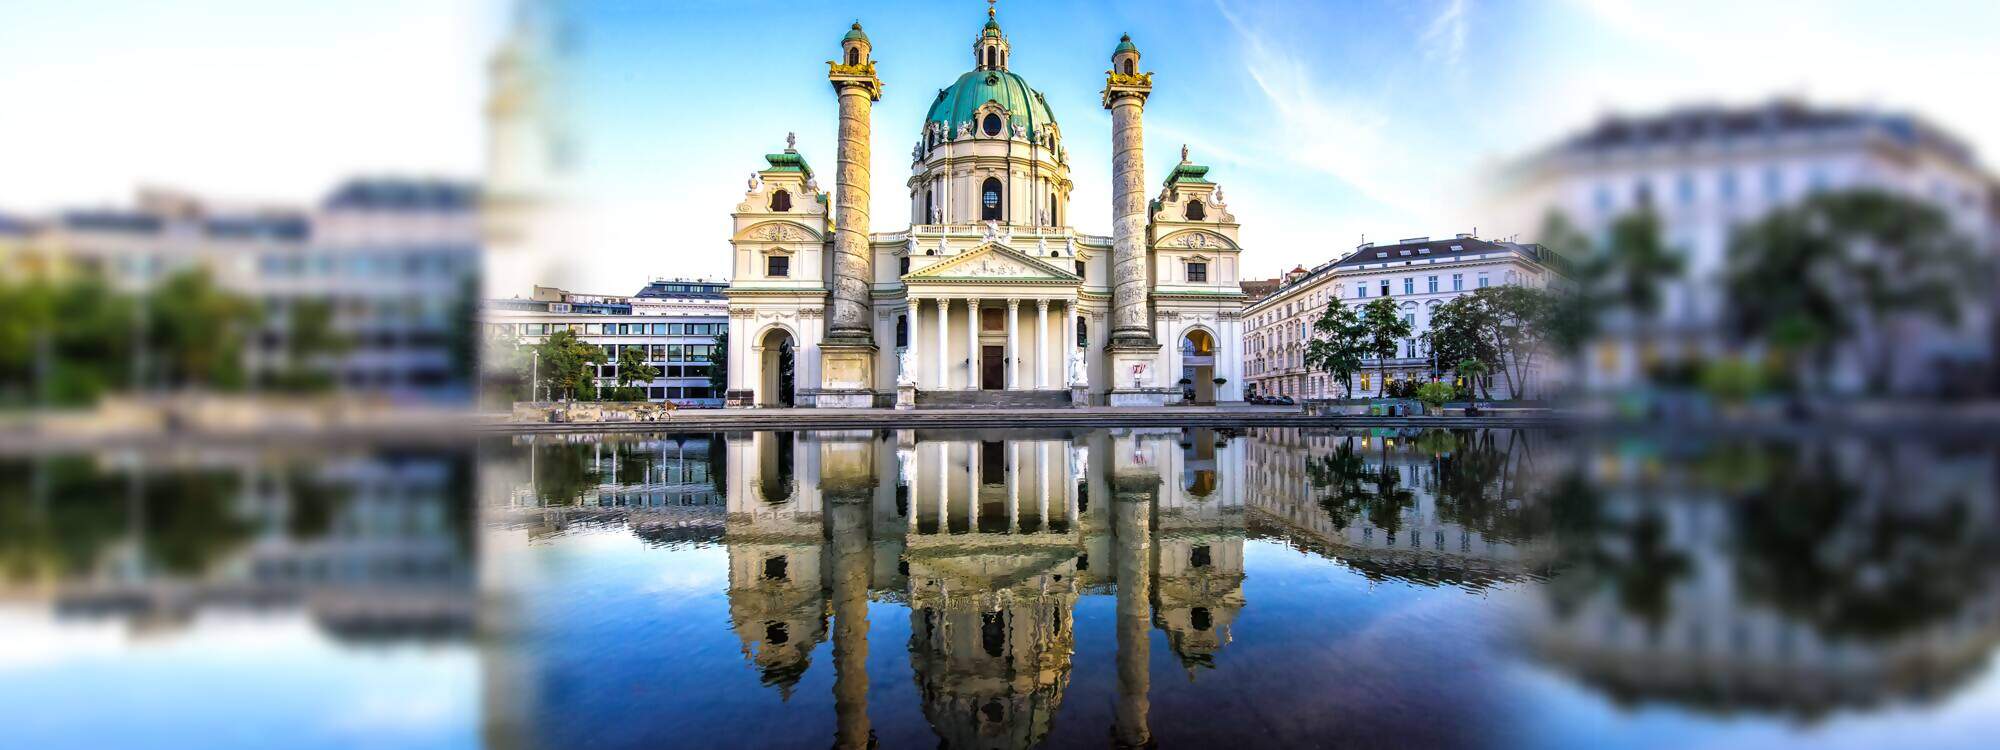 Die kaiserliche Karlskirche in Wien am Abend bei toller Stimmung